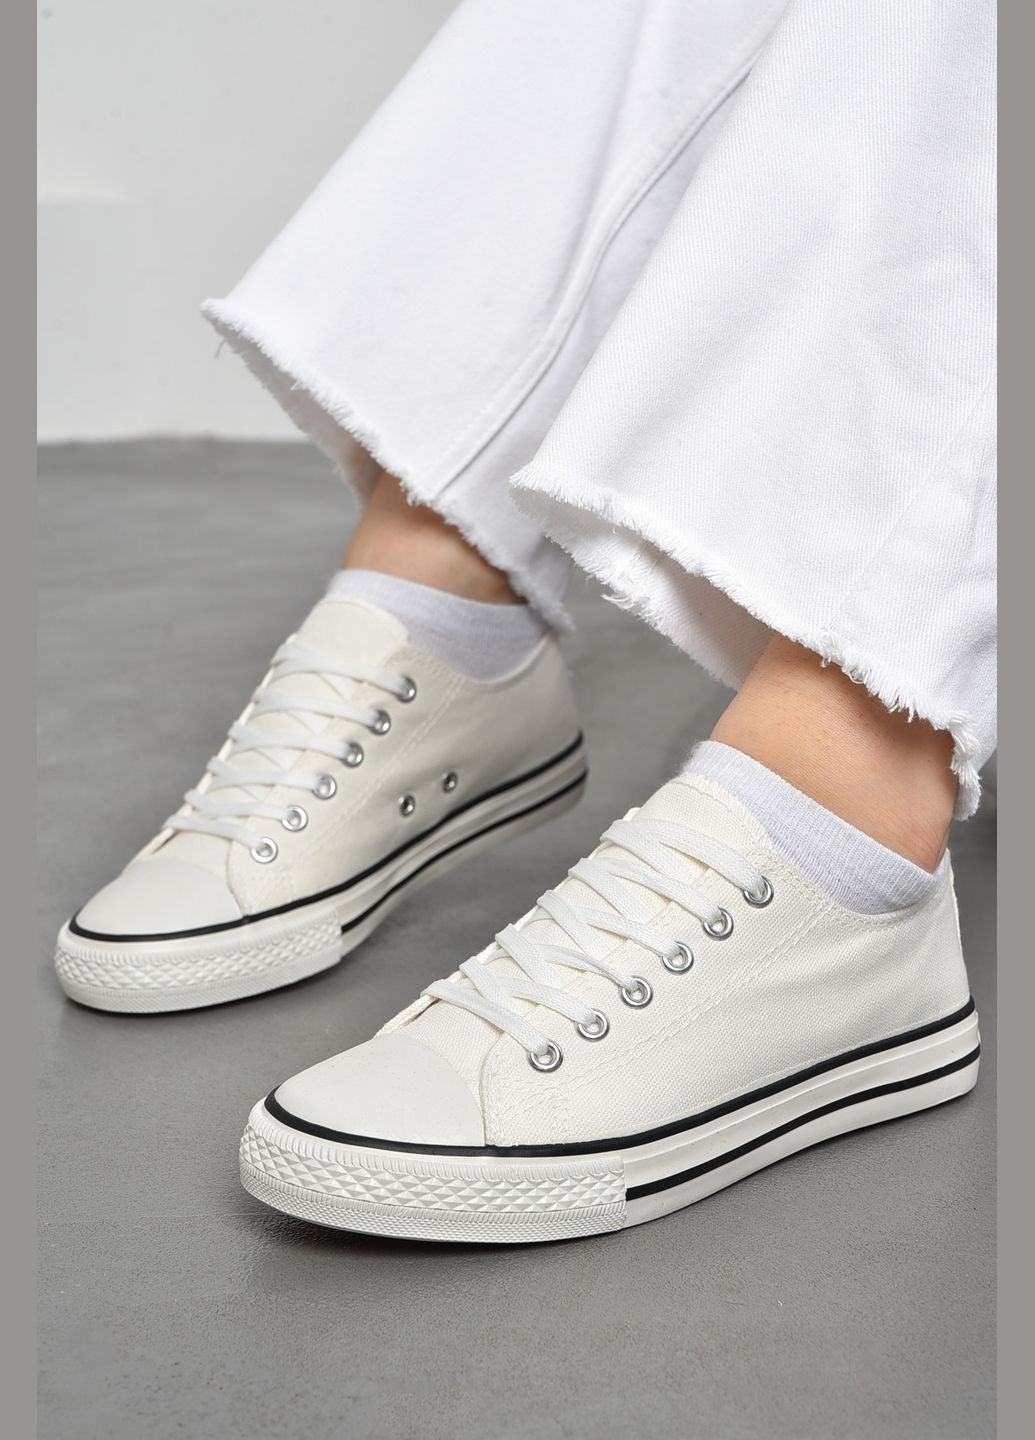 Белые кеды женские текстильные белого цвета на шнуровке Let's Shop